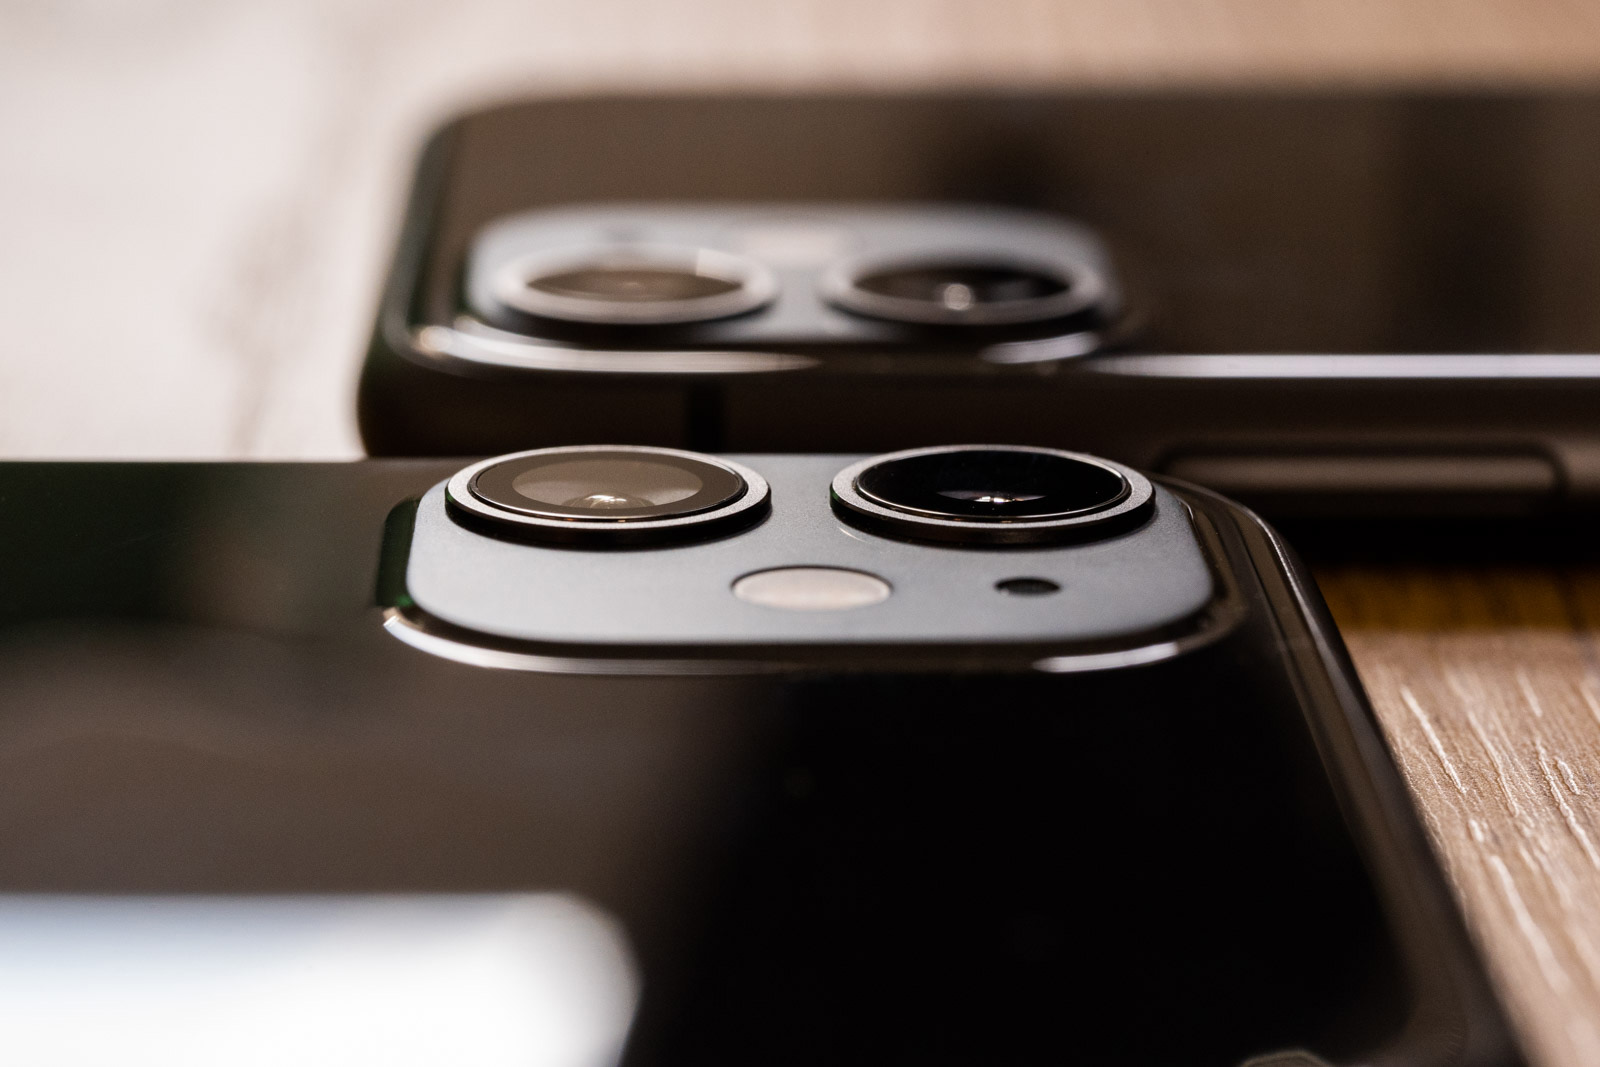 IPhones berriak kamera hobeagoarekin. Apple enpresa bat erosi zuen infragorriko argazkietatik